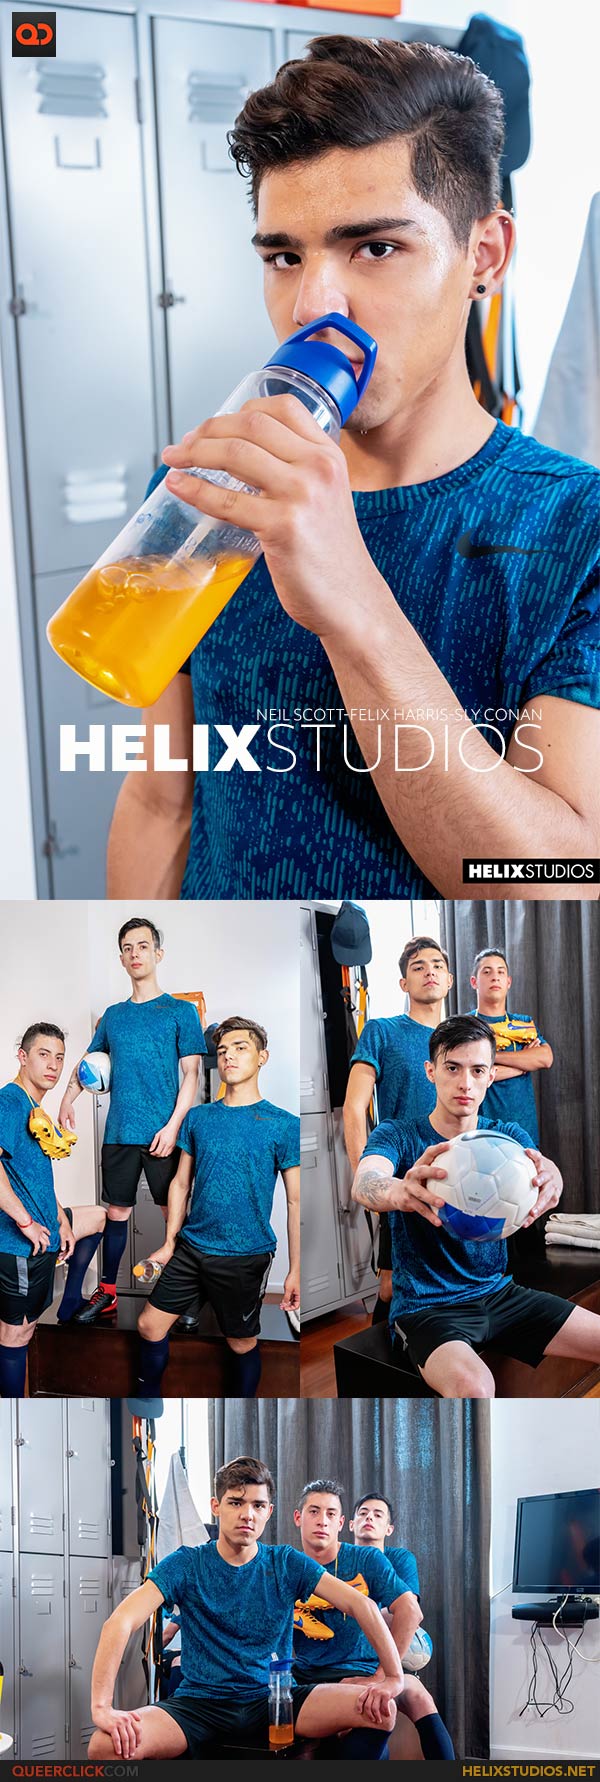 Helix Studios: Neil Scott, Felix Harris and Sly Conan